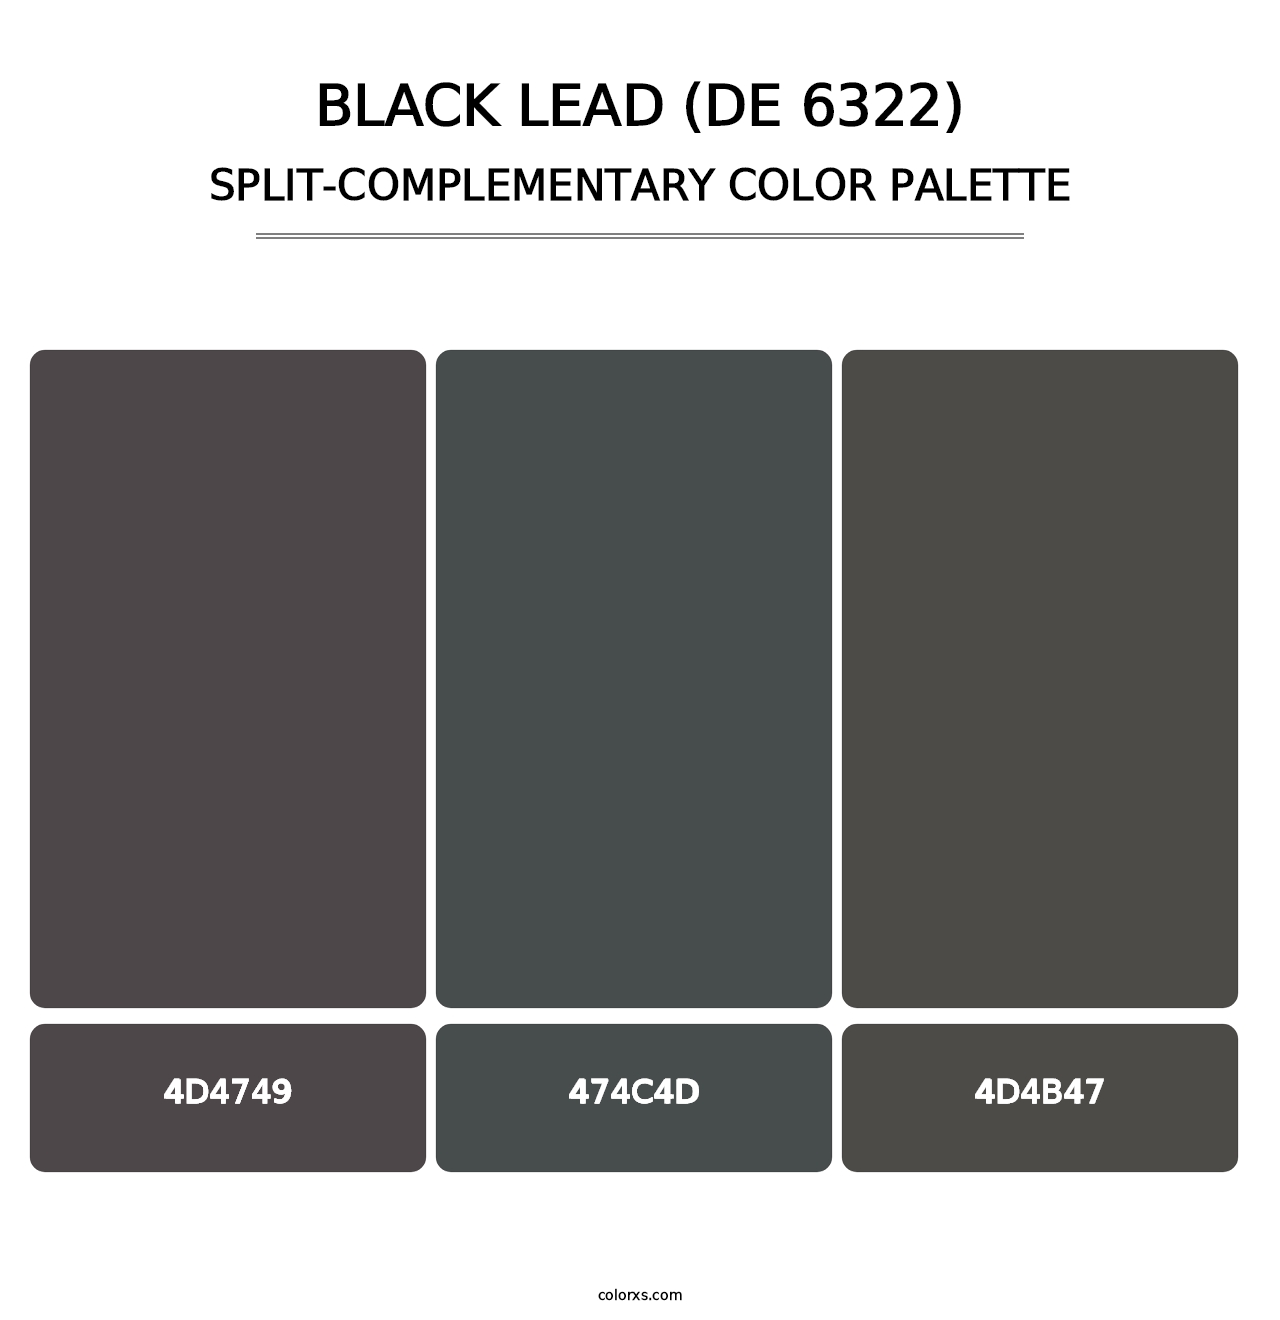 Black Lead (DE 6322) - Split-Complementary Color Palette